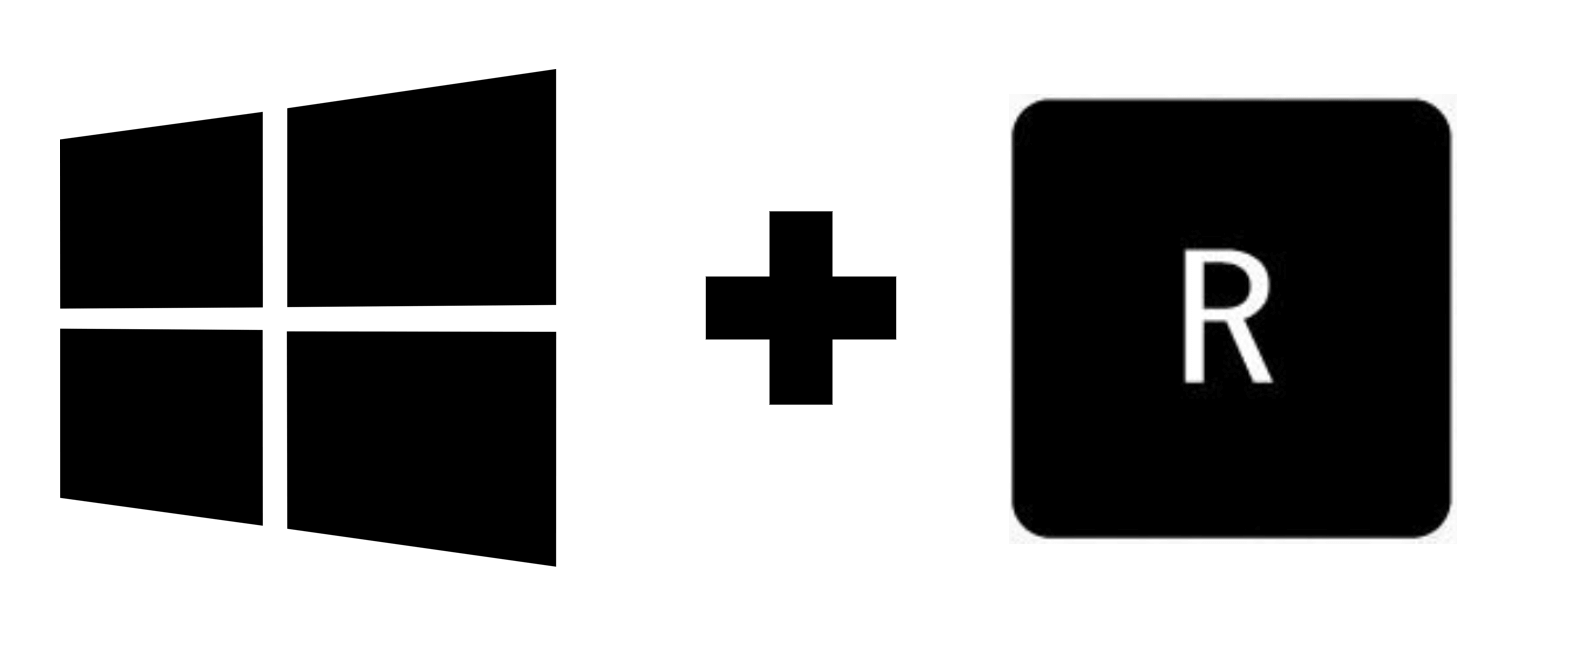 Icône de la touche Windows et icône de la touche R pour afficher le raccourci permettant d'acclader à oty.com 
